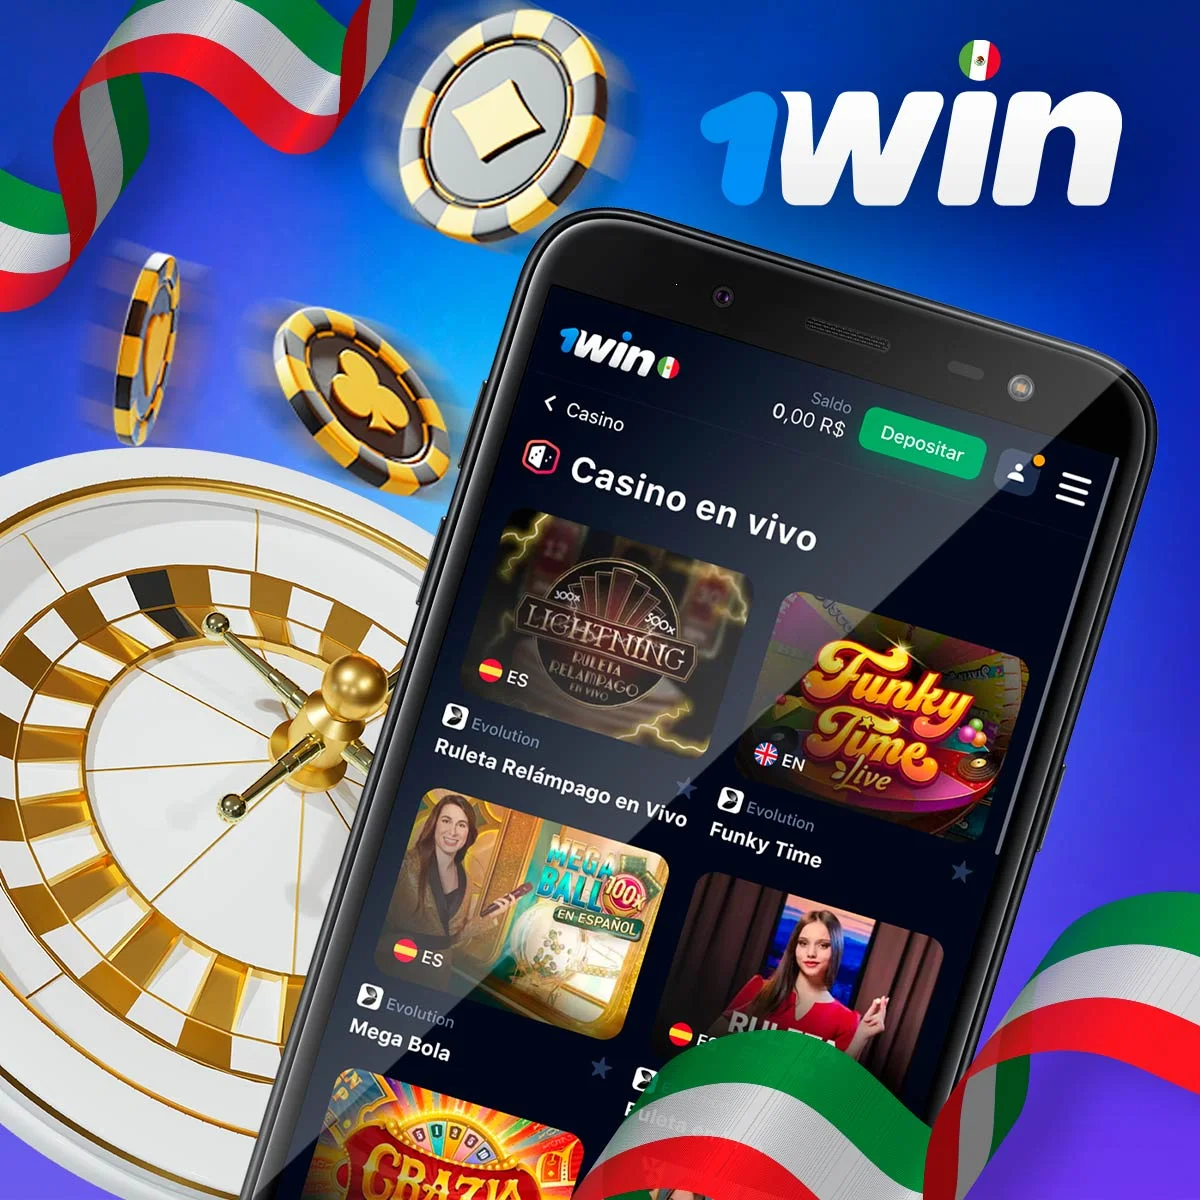 1Win ofrece una gran selección de juegos de casino en vivo